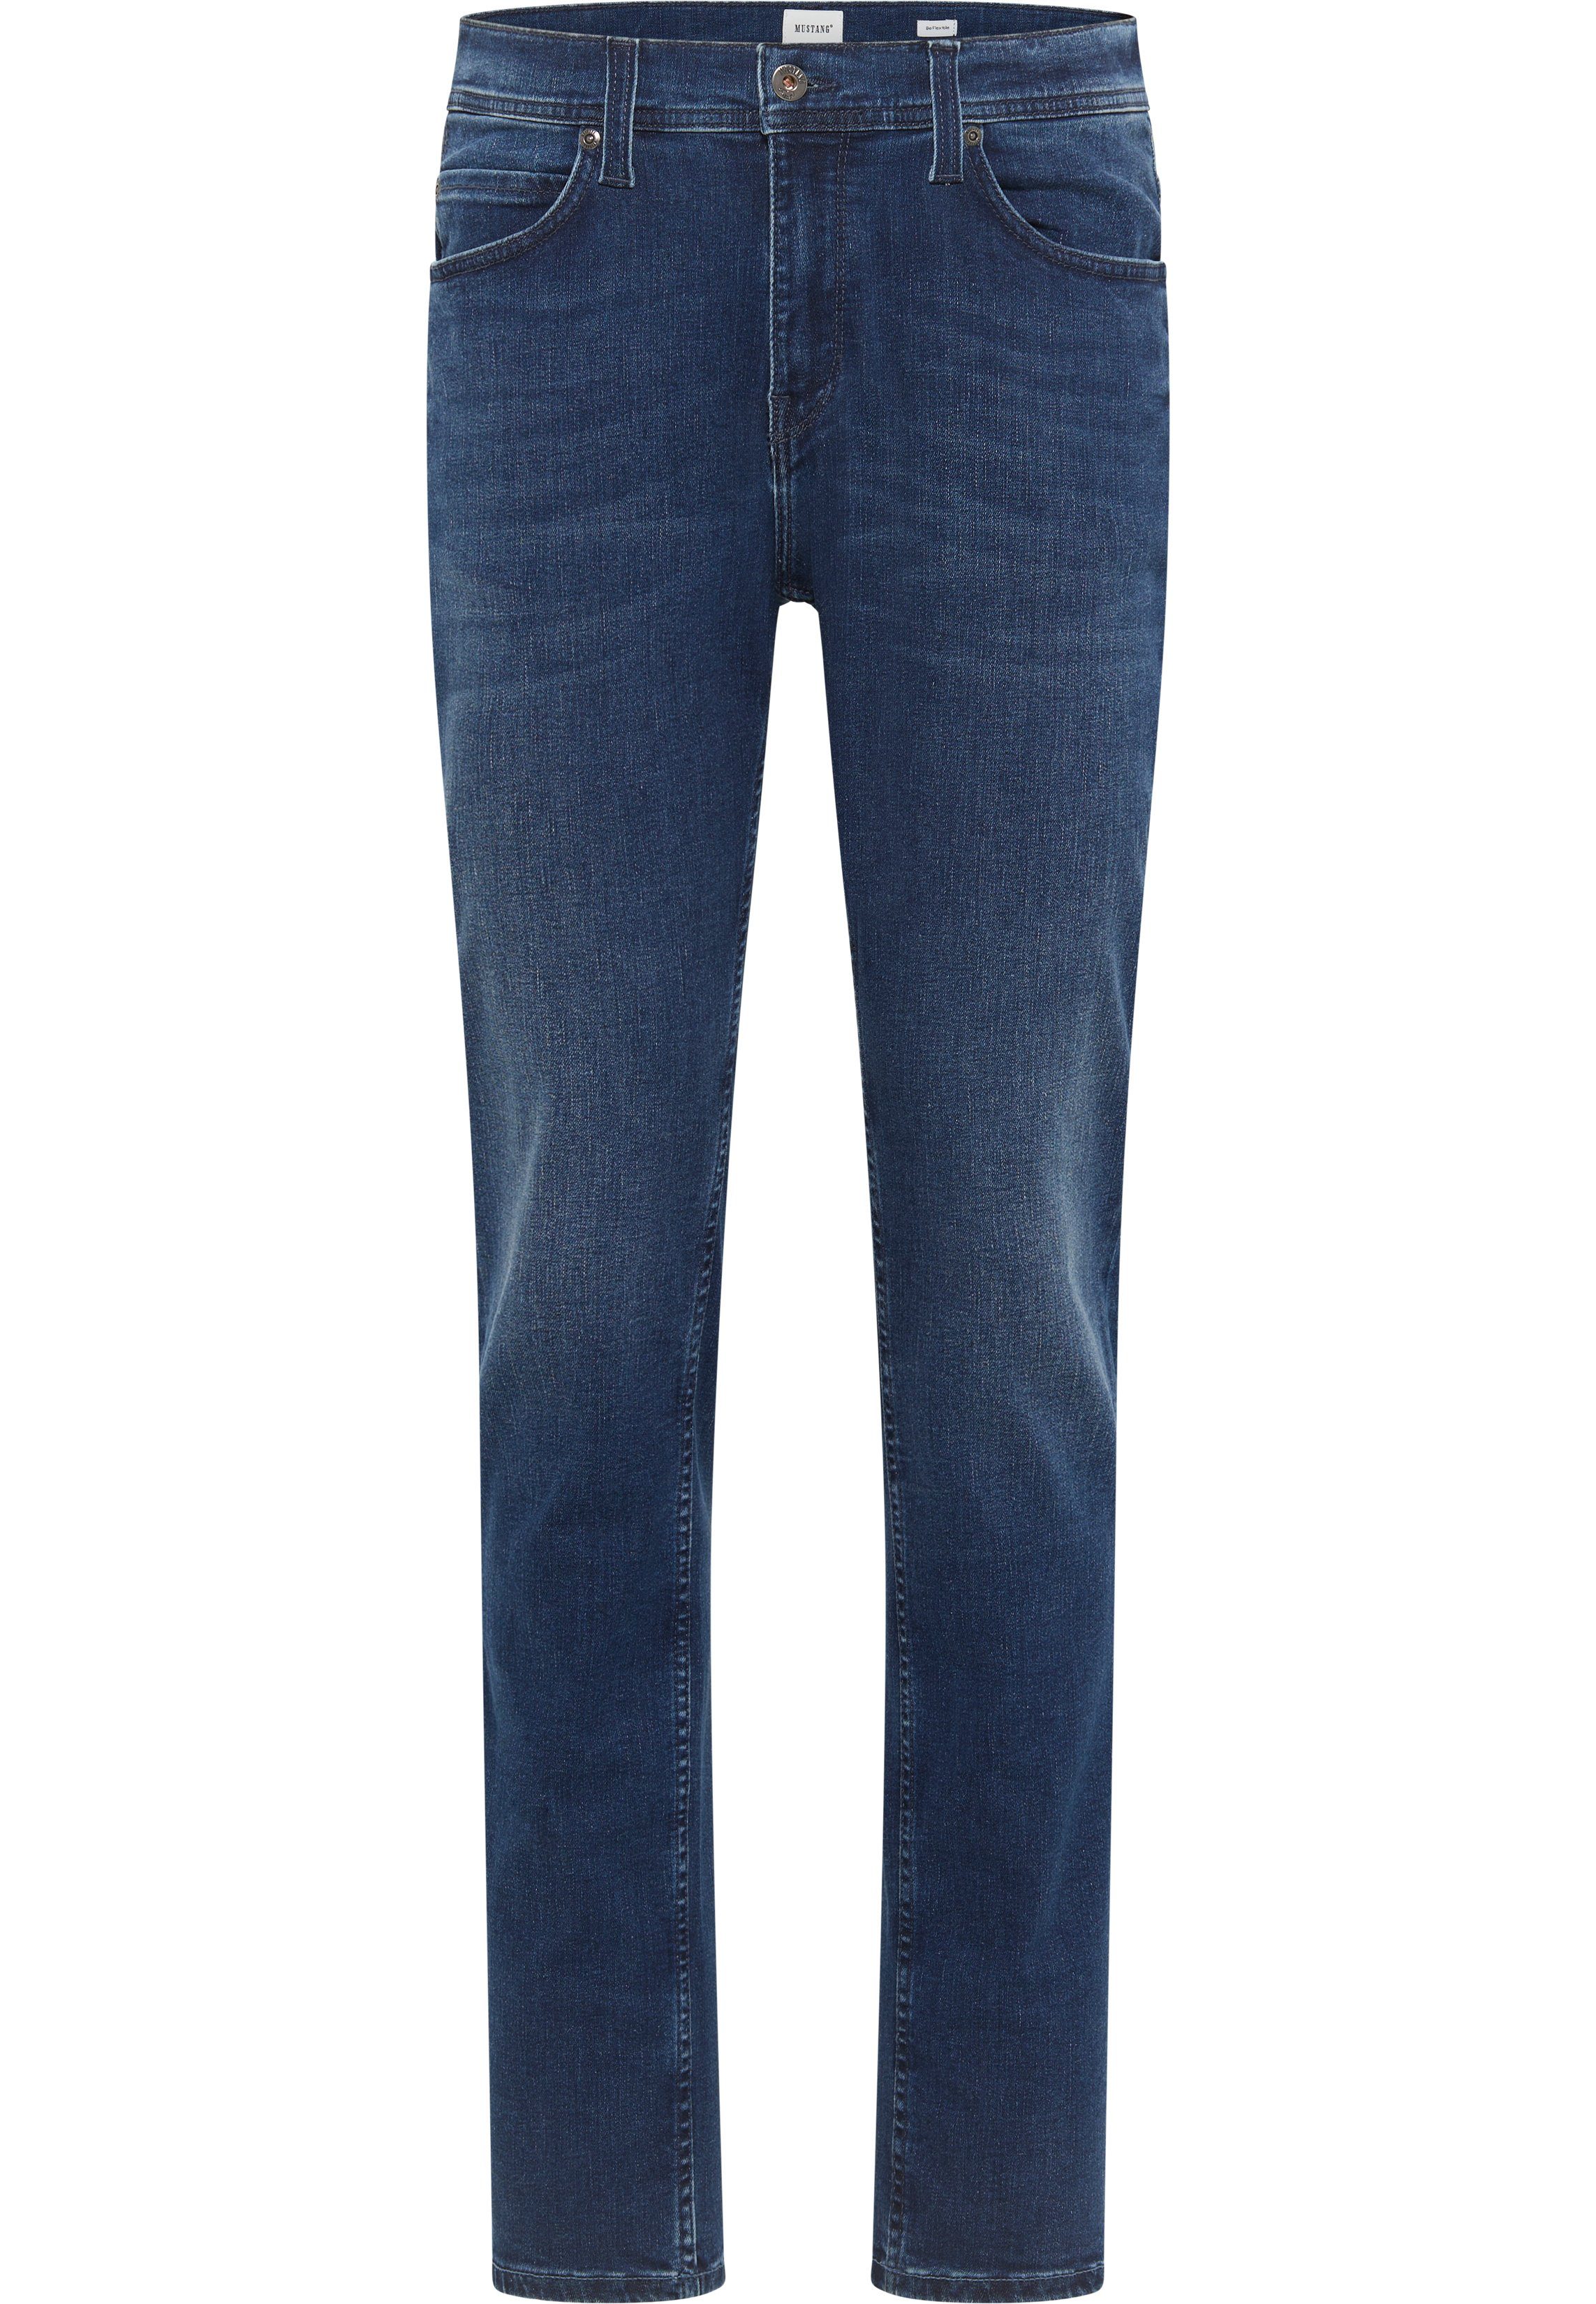 MUSTANG Slim-fit-Jeans Style Vegas blau-5000782